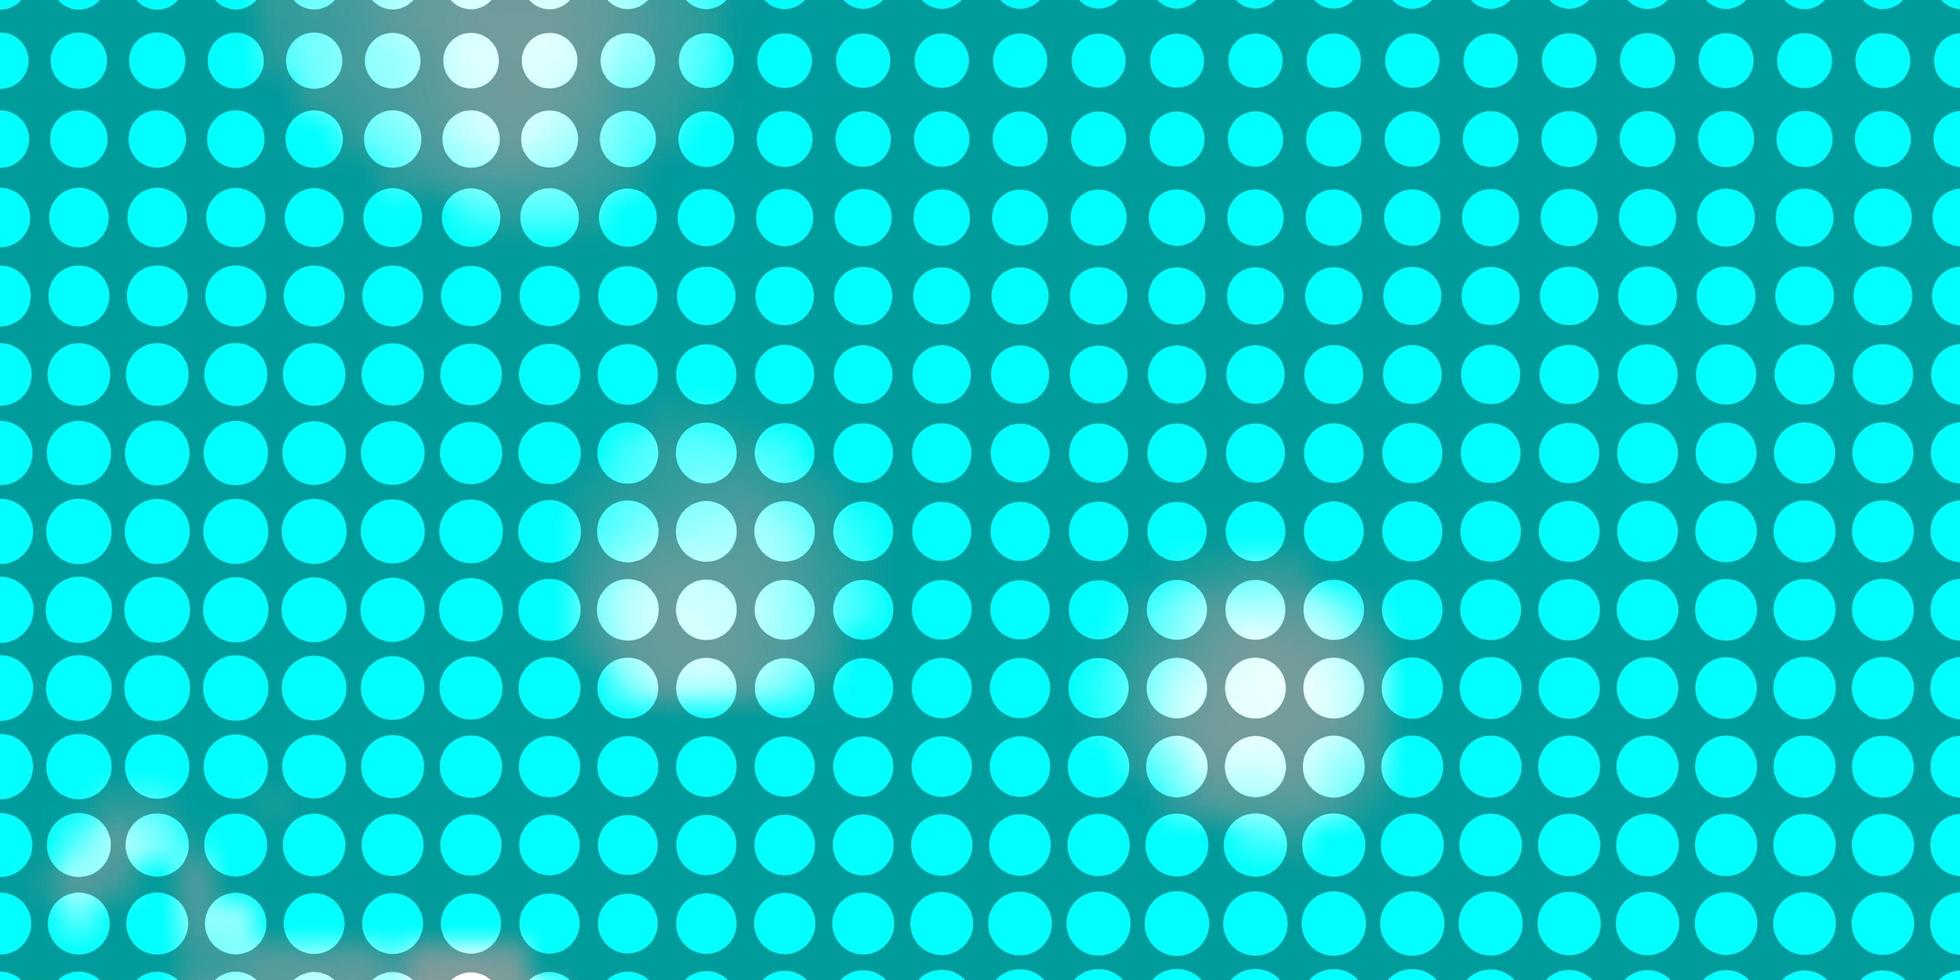 blå layout med cirklar. vektor